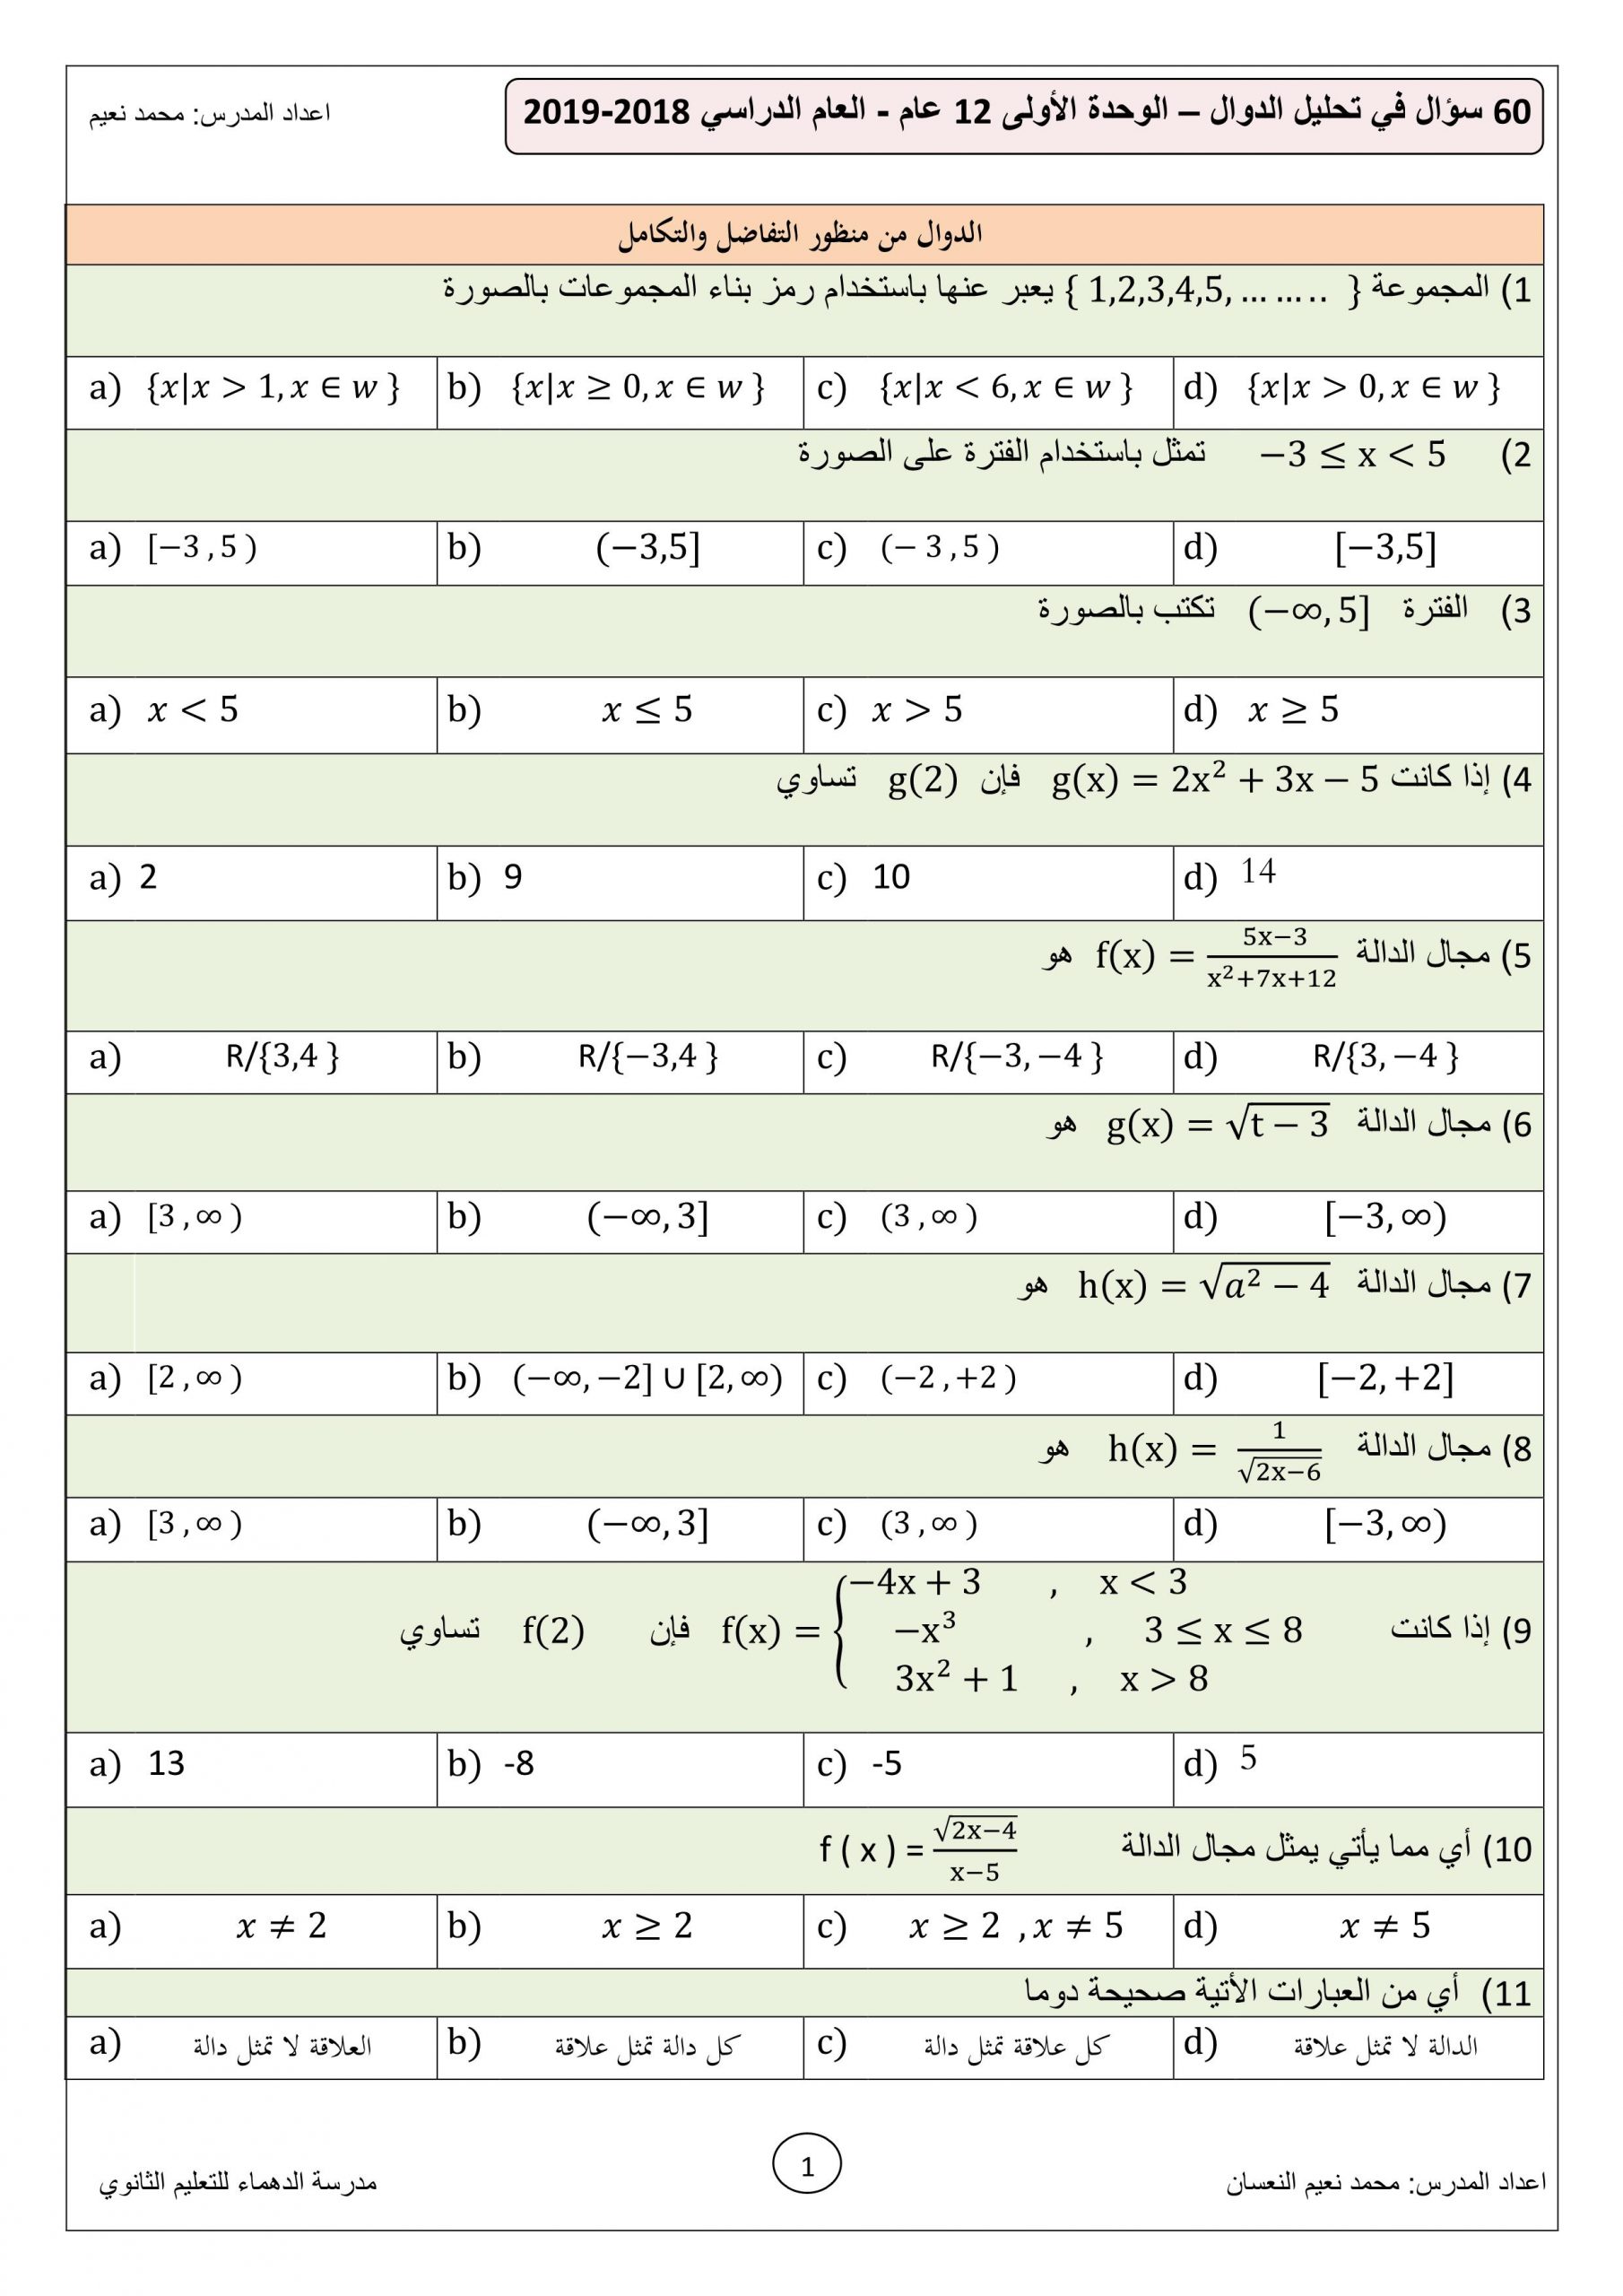 اوراق عمل تحليل الدوال الصف الثاني عشر عام مادة الرياضيات المتكاملة